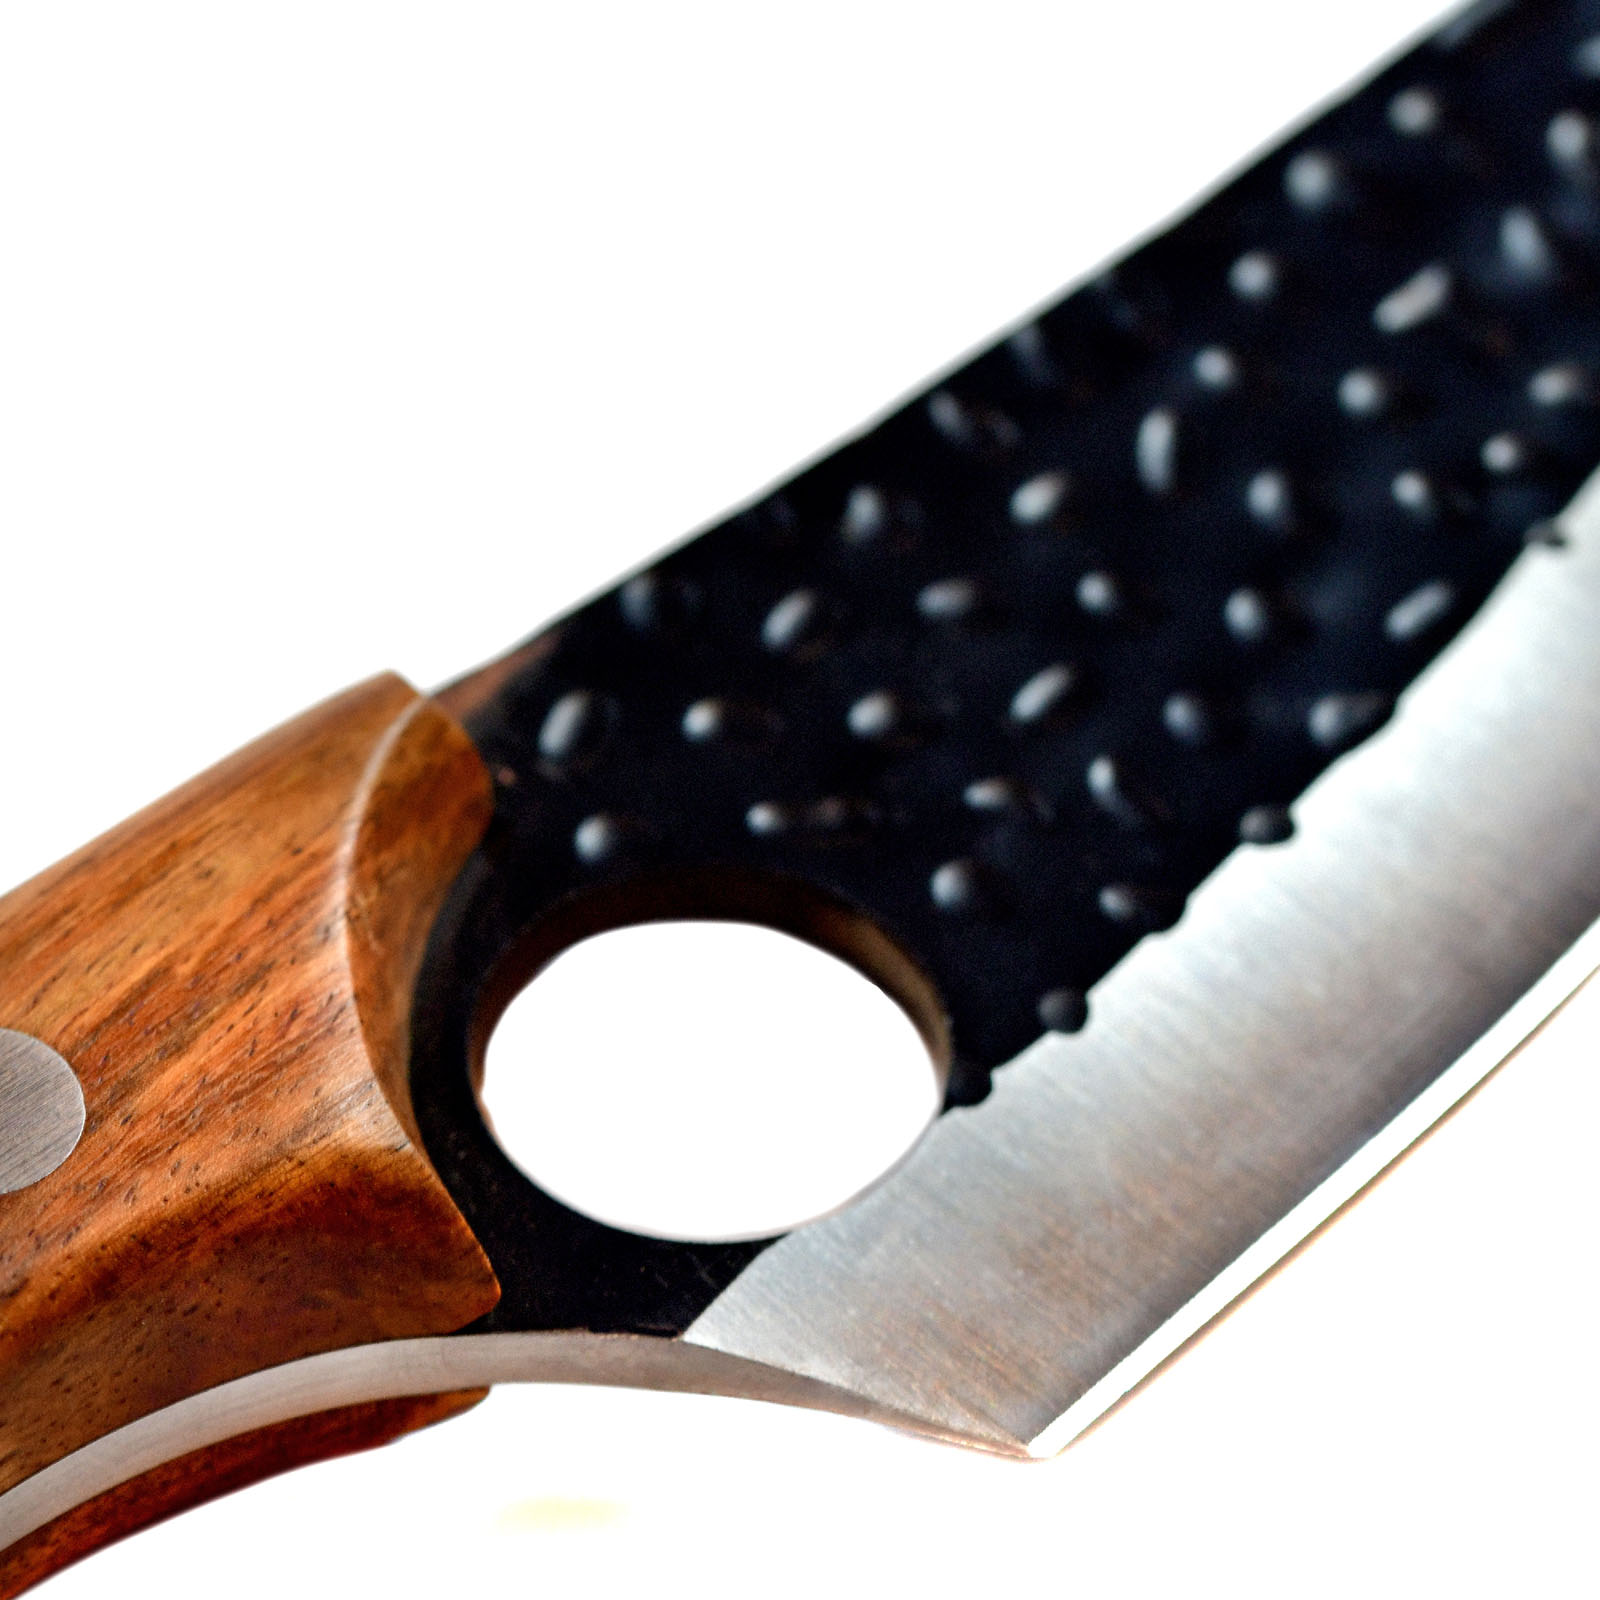 Serbisches Metzgermesser, Fleisch-Hackmesser, Ausbeinmesser mit Scheide und Abziehriemen